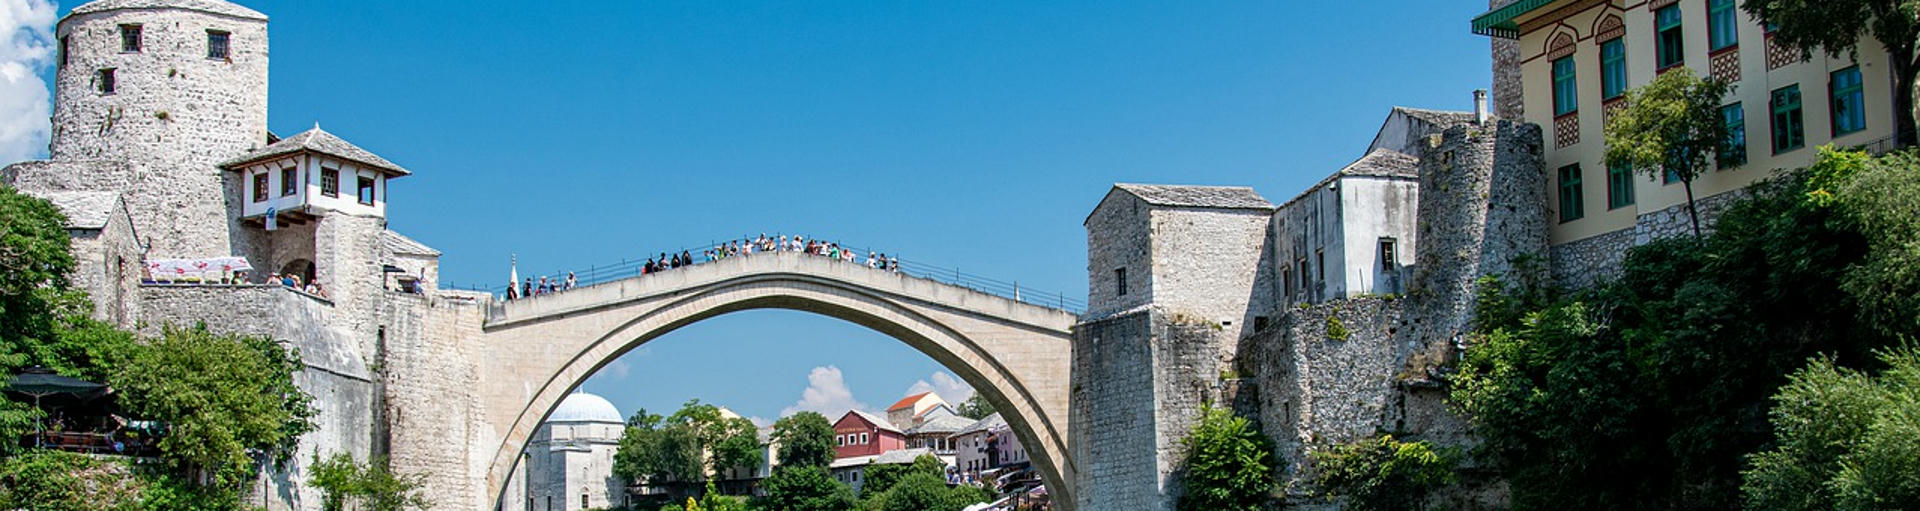 historische Bauwerke beim Wohnmobilurlaub in Bosnien entdecken